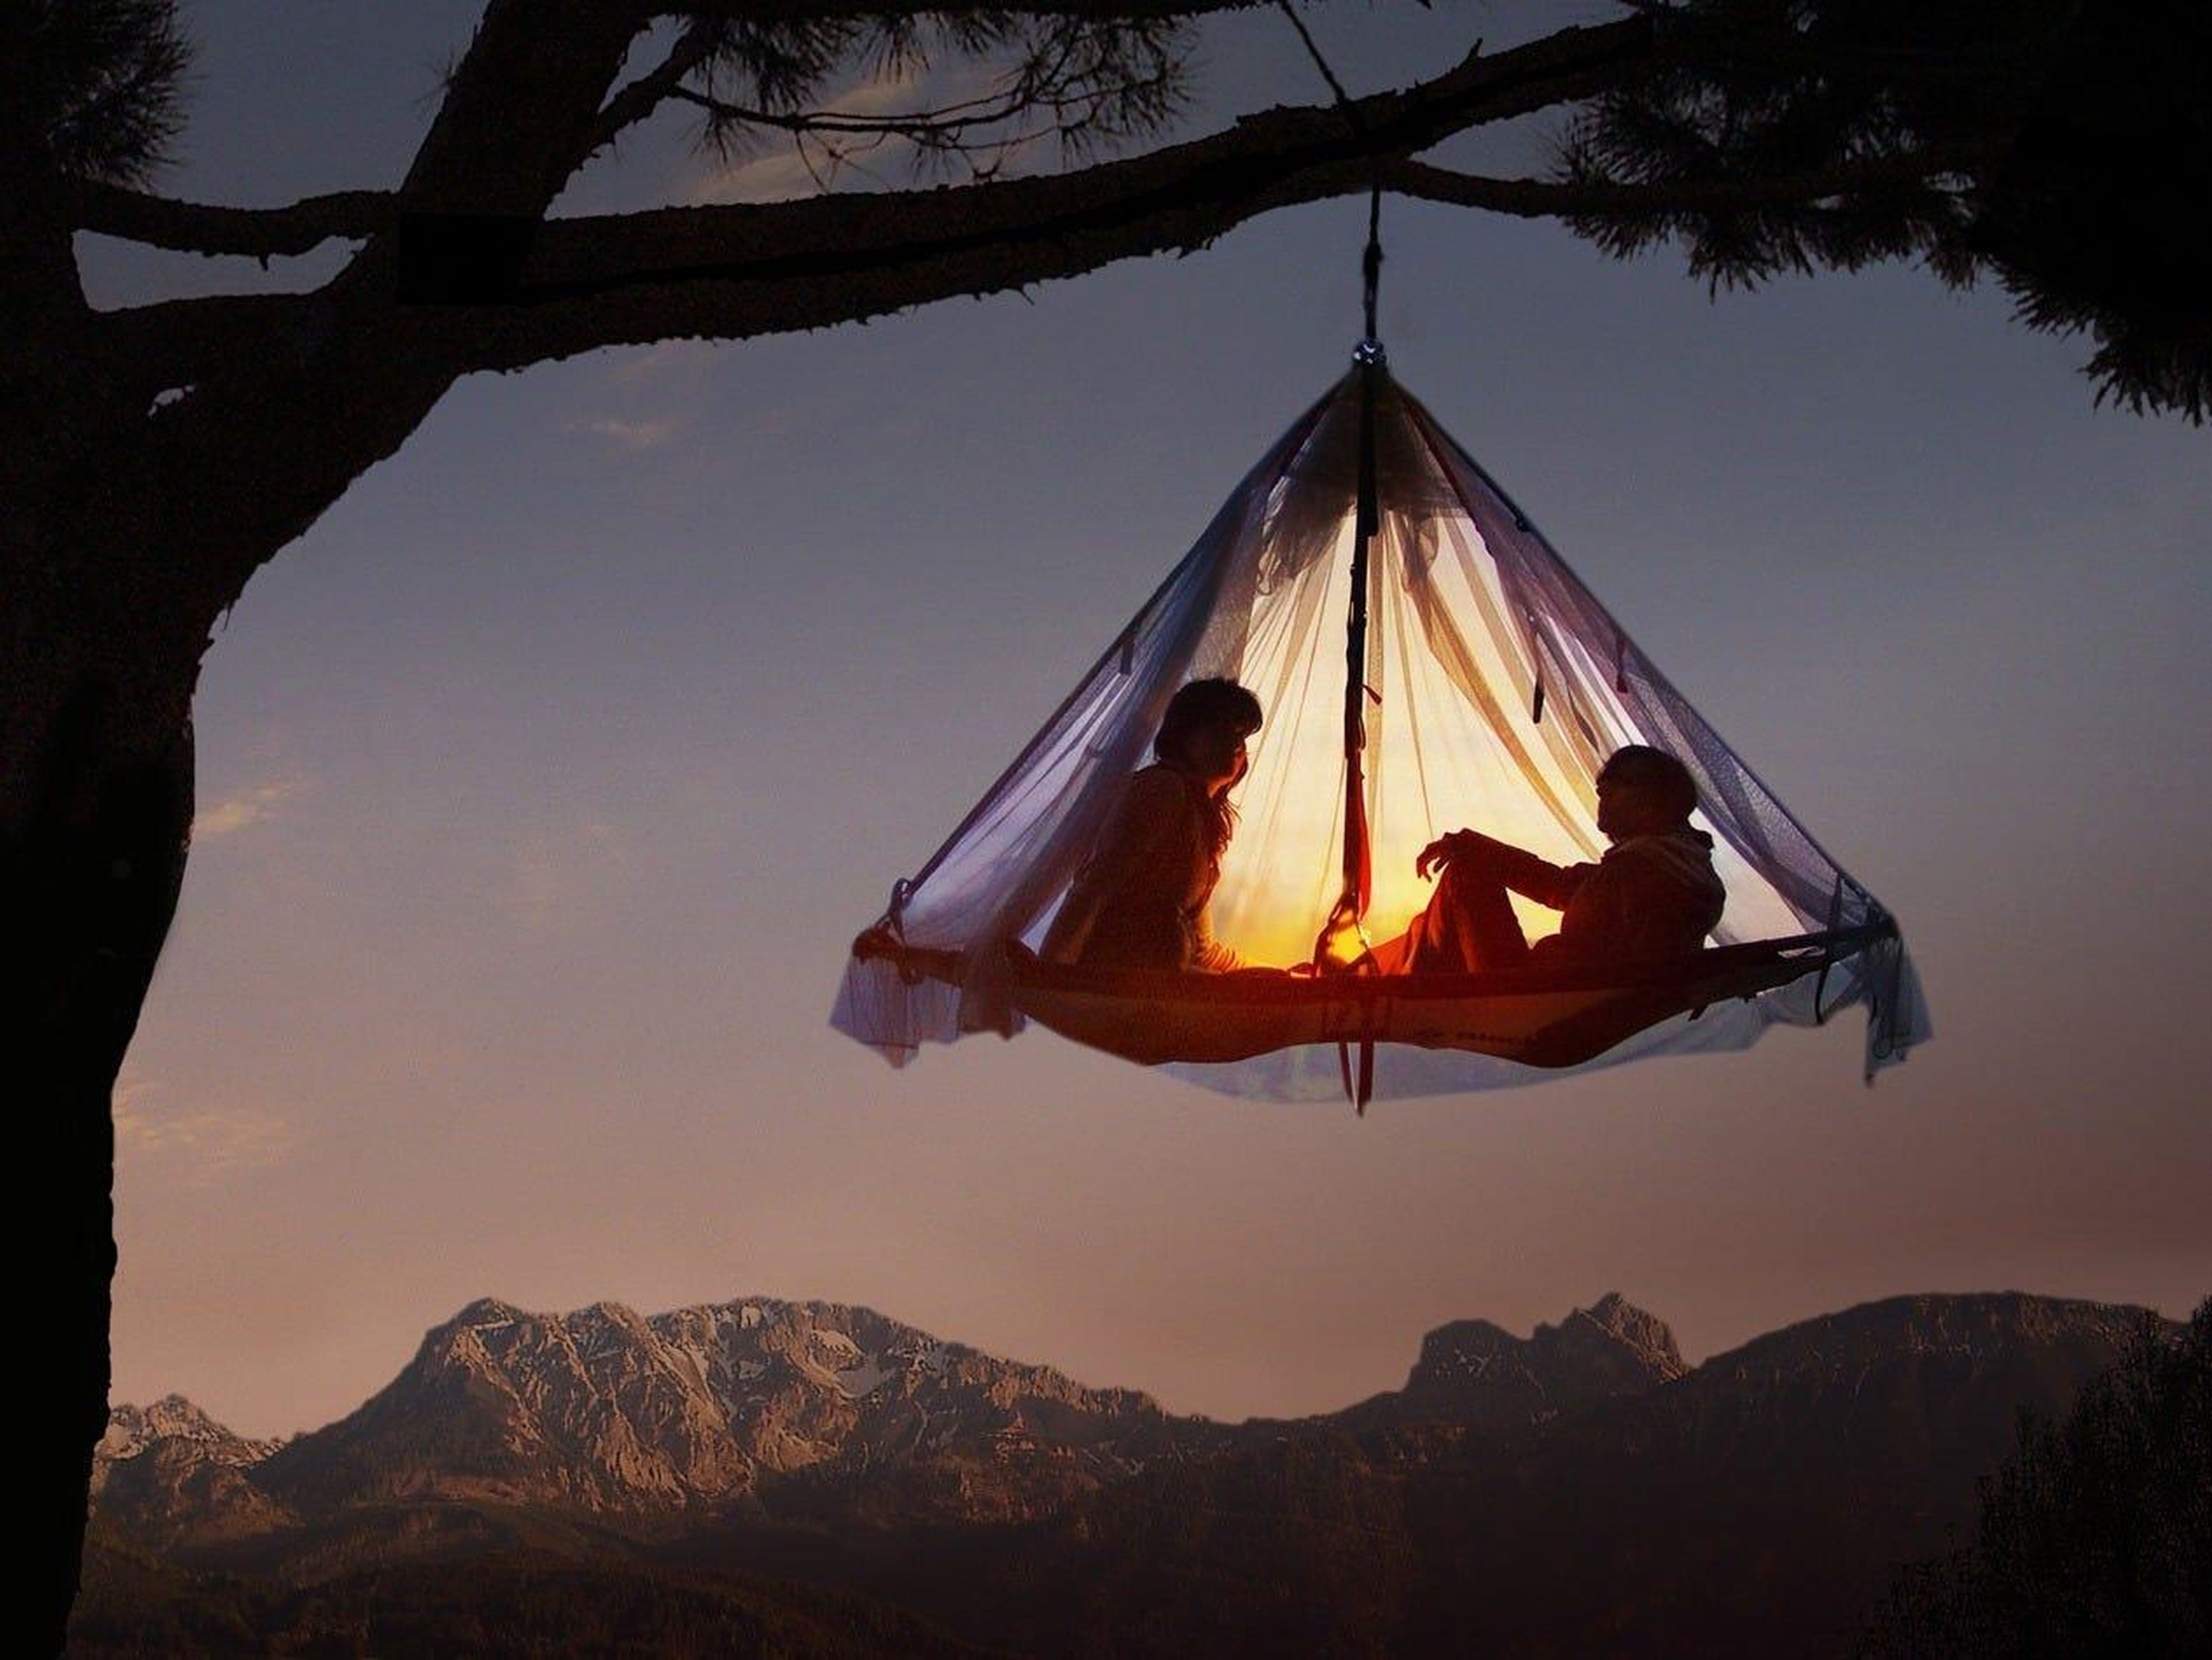 Una acampada en los árboles es la mejor aventura.